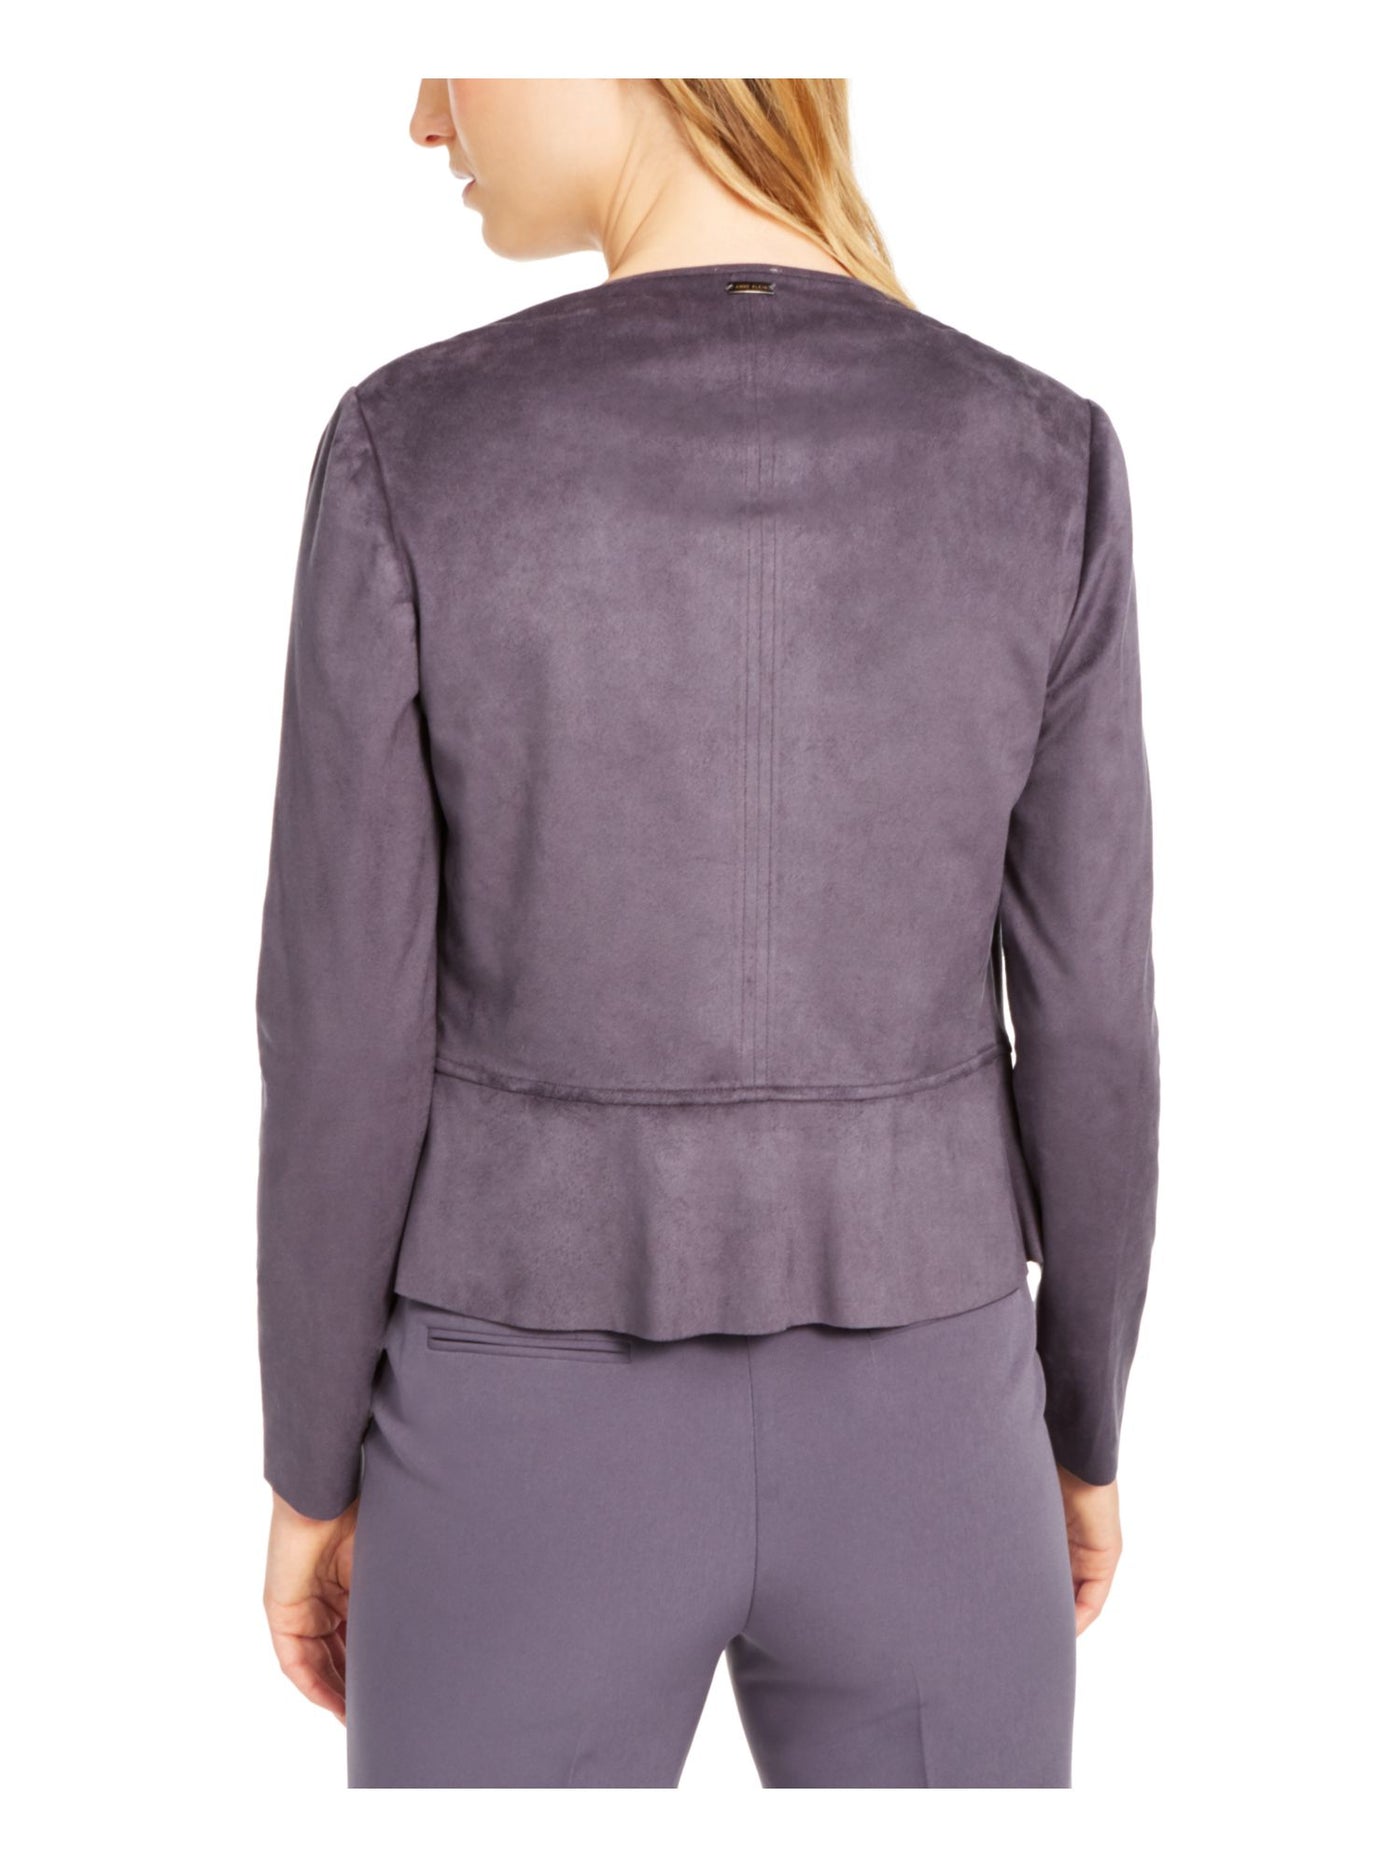 ANNE KLEIN Womens Gray Long Sleeve Open Cardigan Sweater XXS